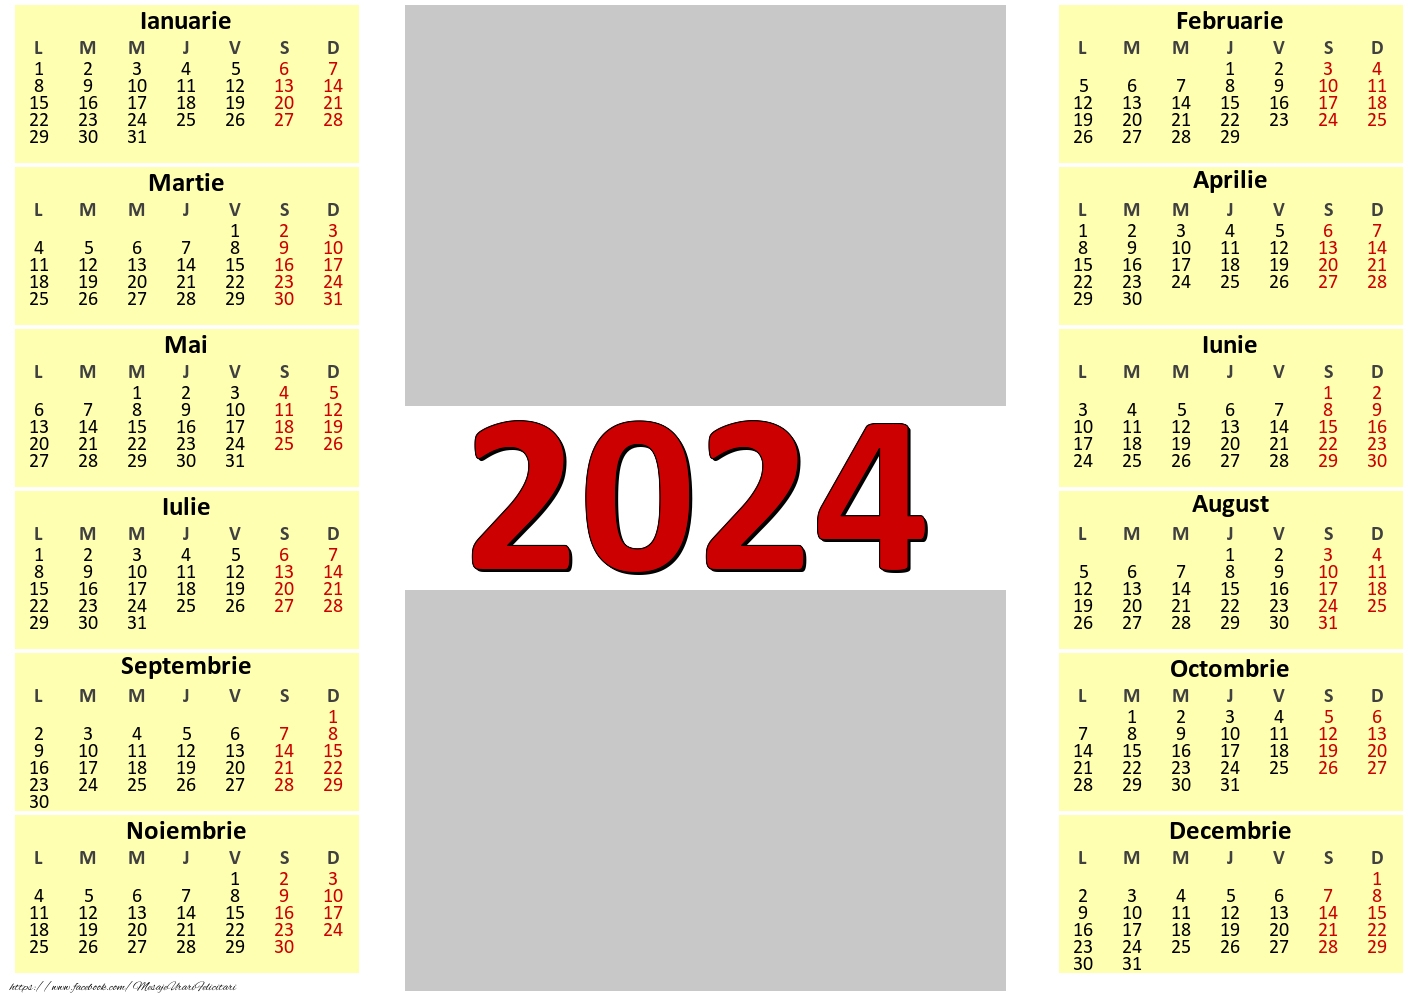 Felicitari personalizate cu calendare - Calendar 2024 clasic cu 2 poze